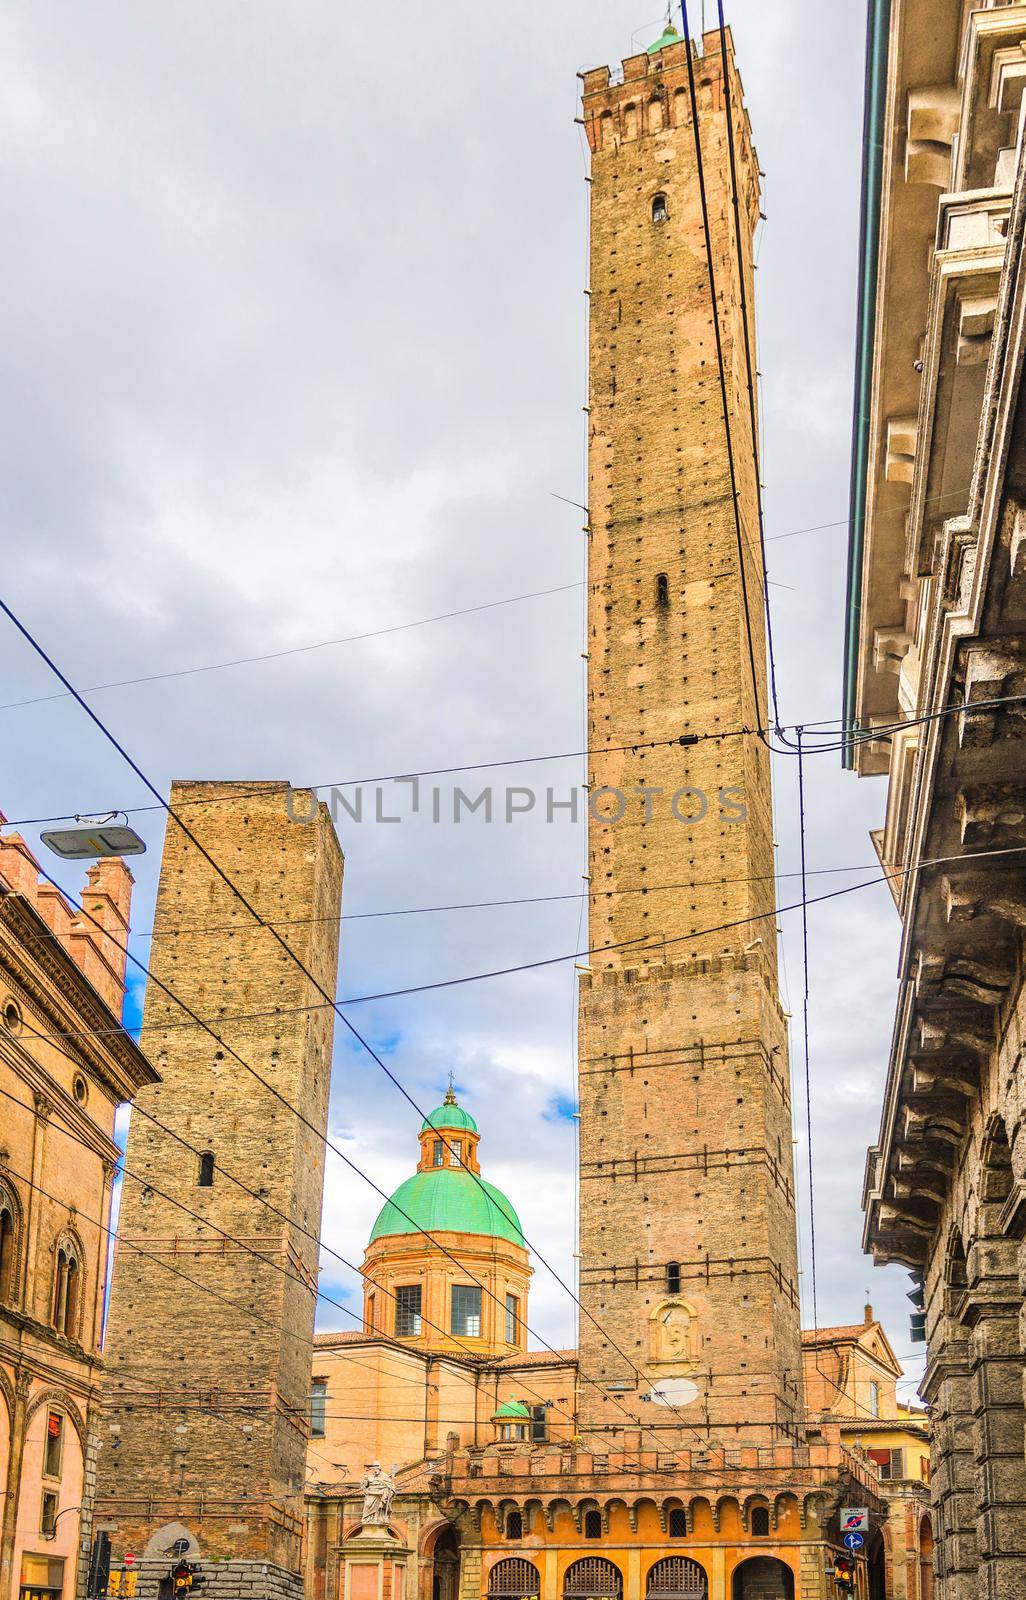 Two medieval towers of Bologna Le Due Torri: Asinelli and Garisenda and Chiesa di San Bartolomeo Gaetano church on Piazza di Porta Ravegnana square in old historical city centre, Emilia-Romagna, Italy